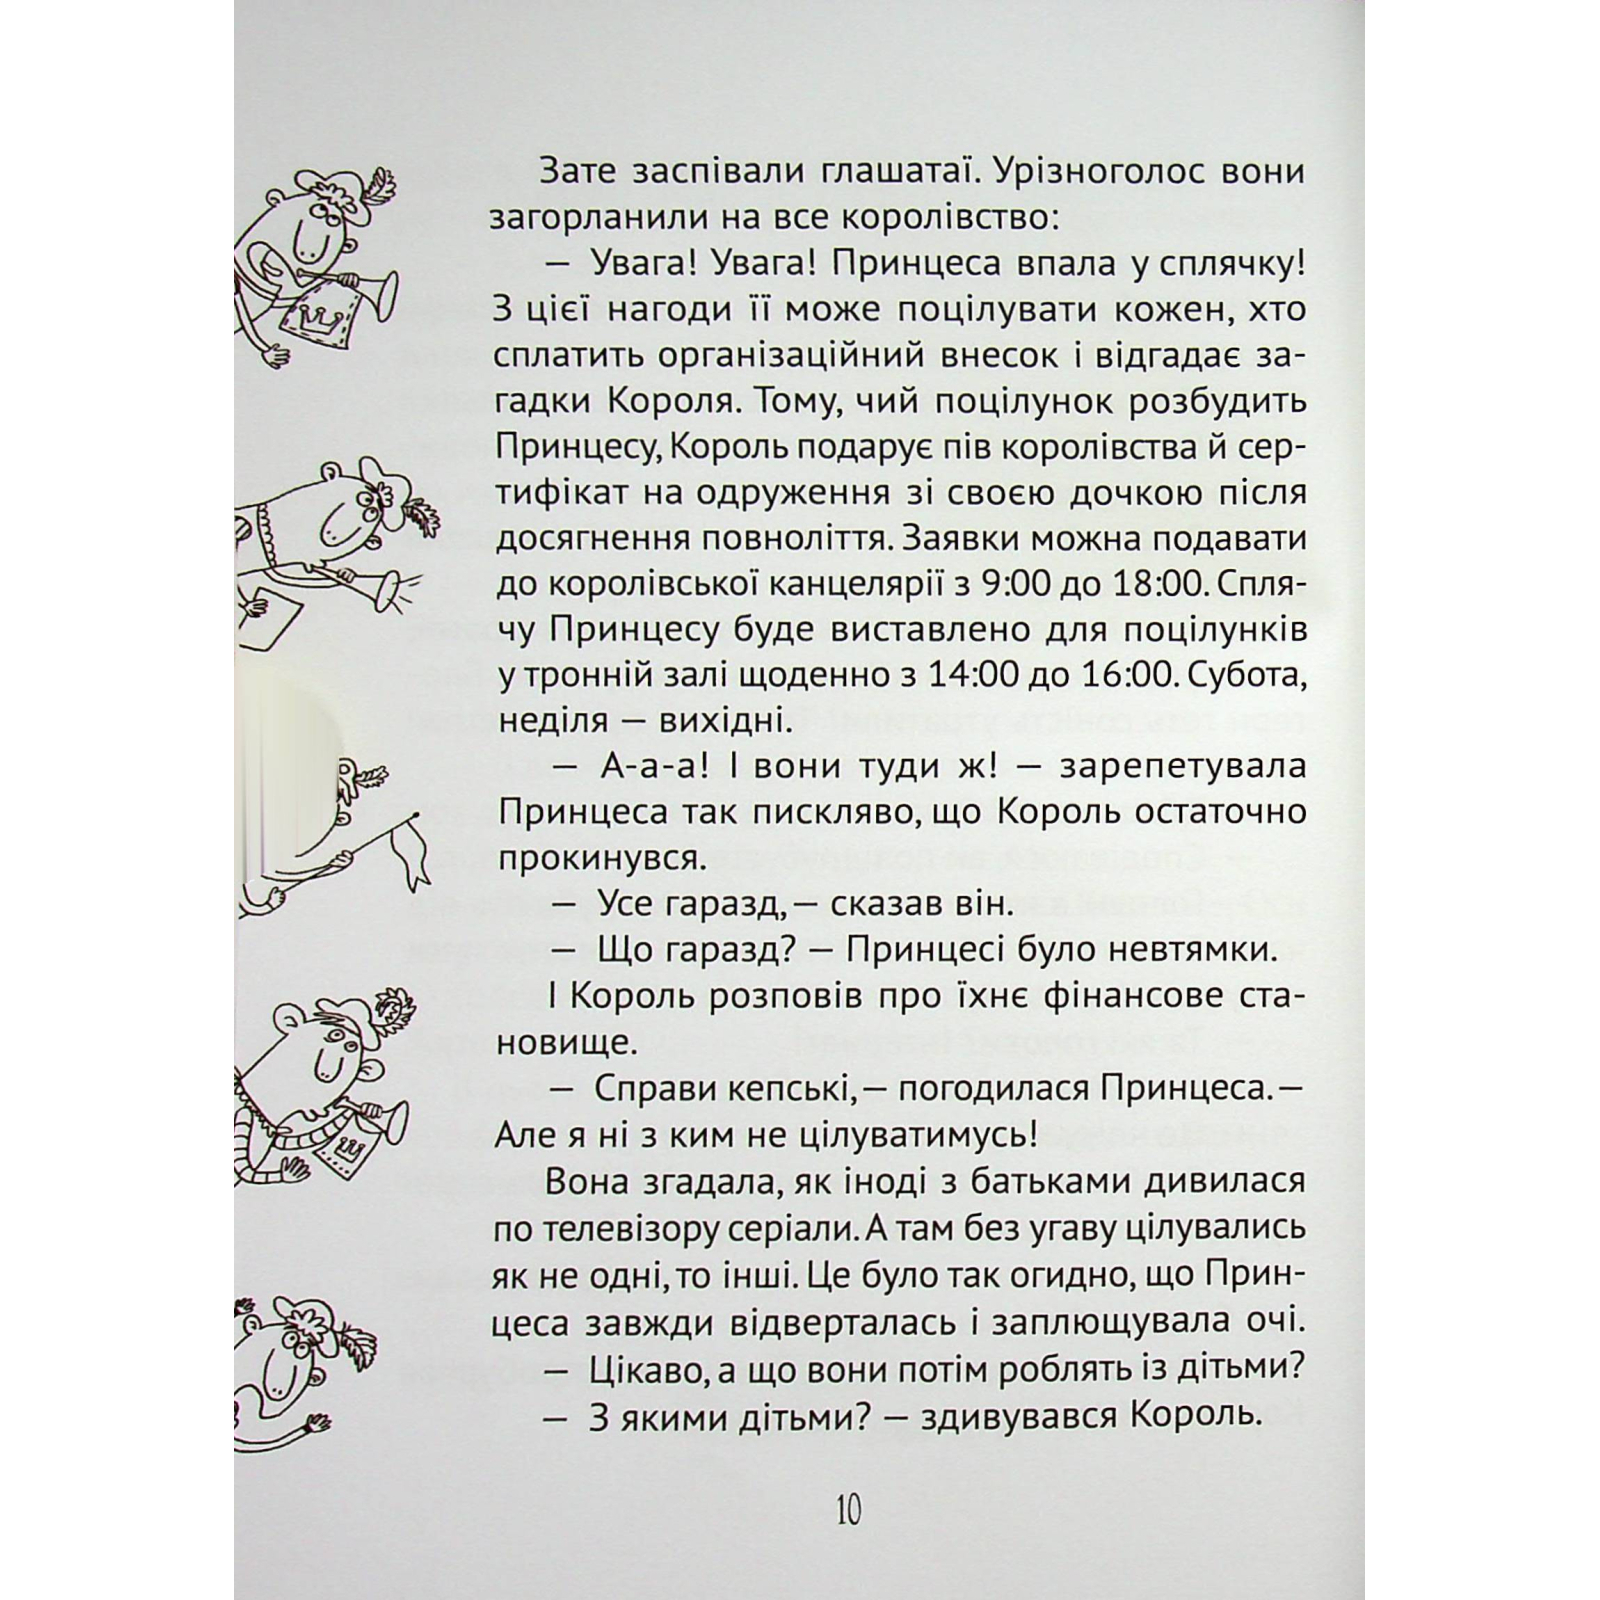 Книга Кожен може поцілувати принцесу - Кузько Кузякін Vivat (9789669821928) изображение 3